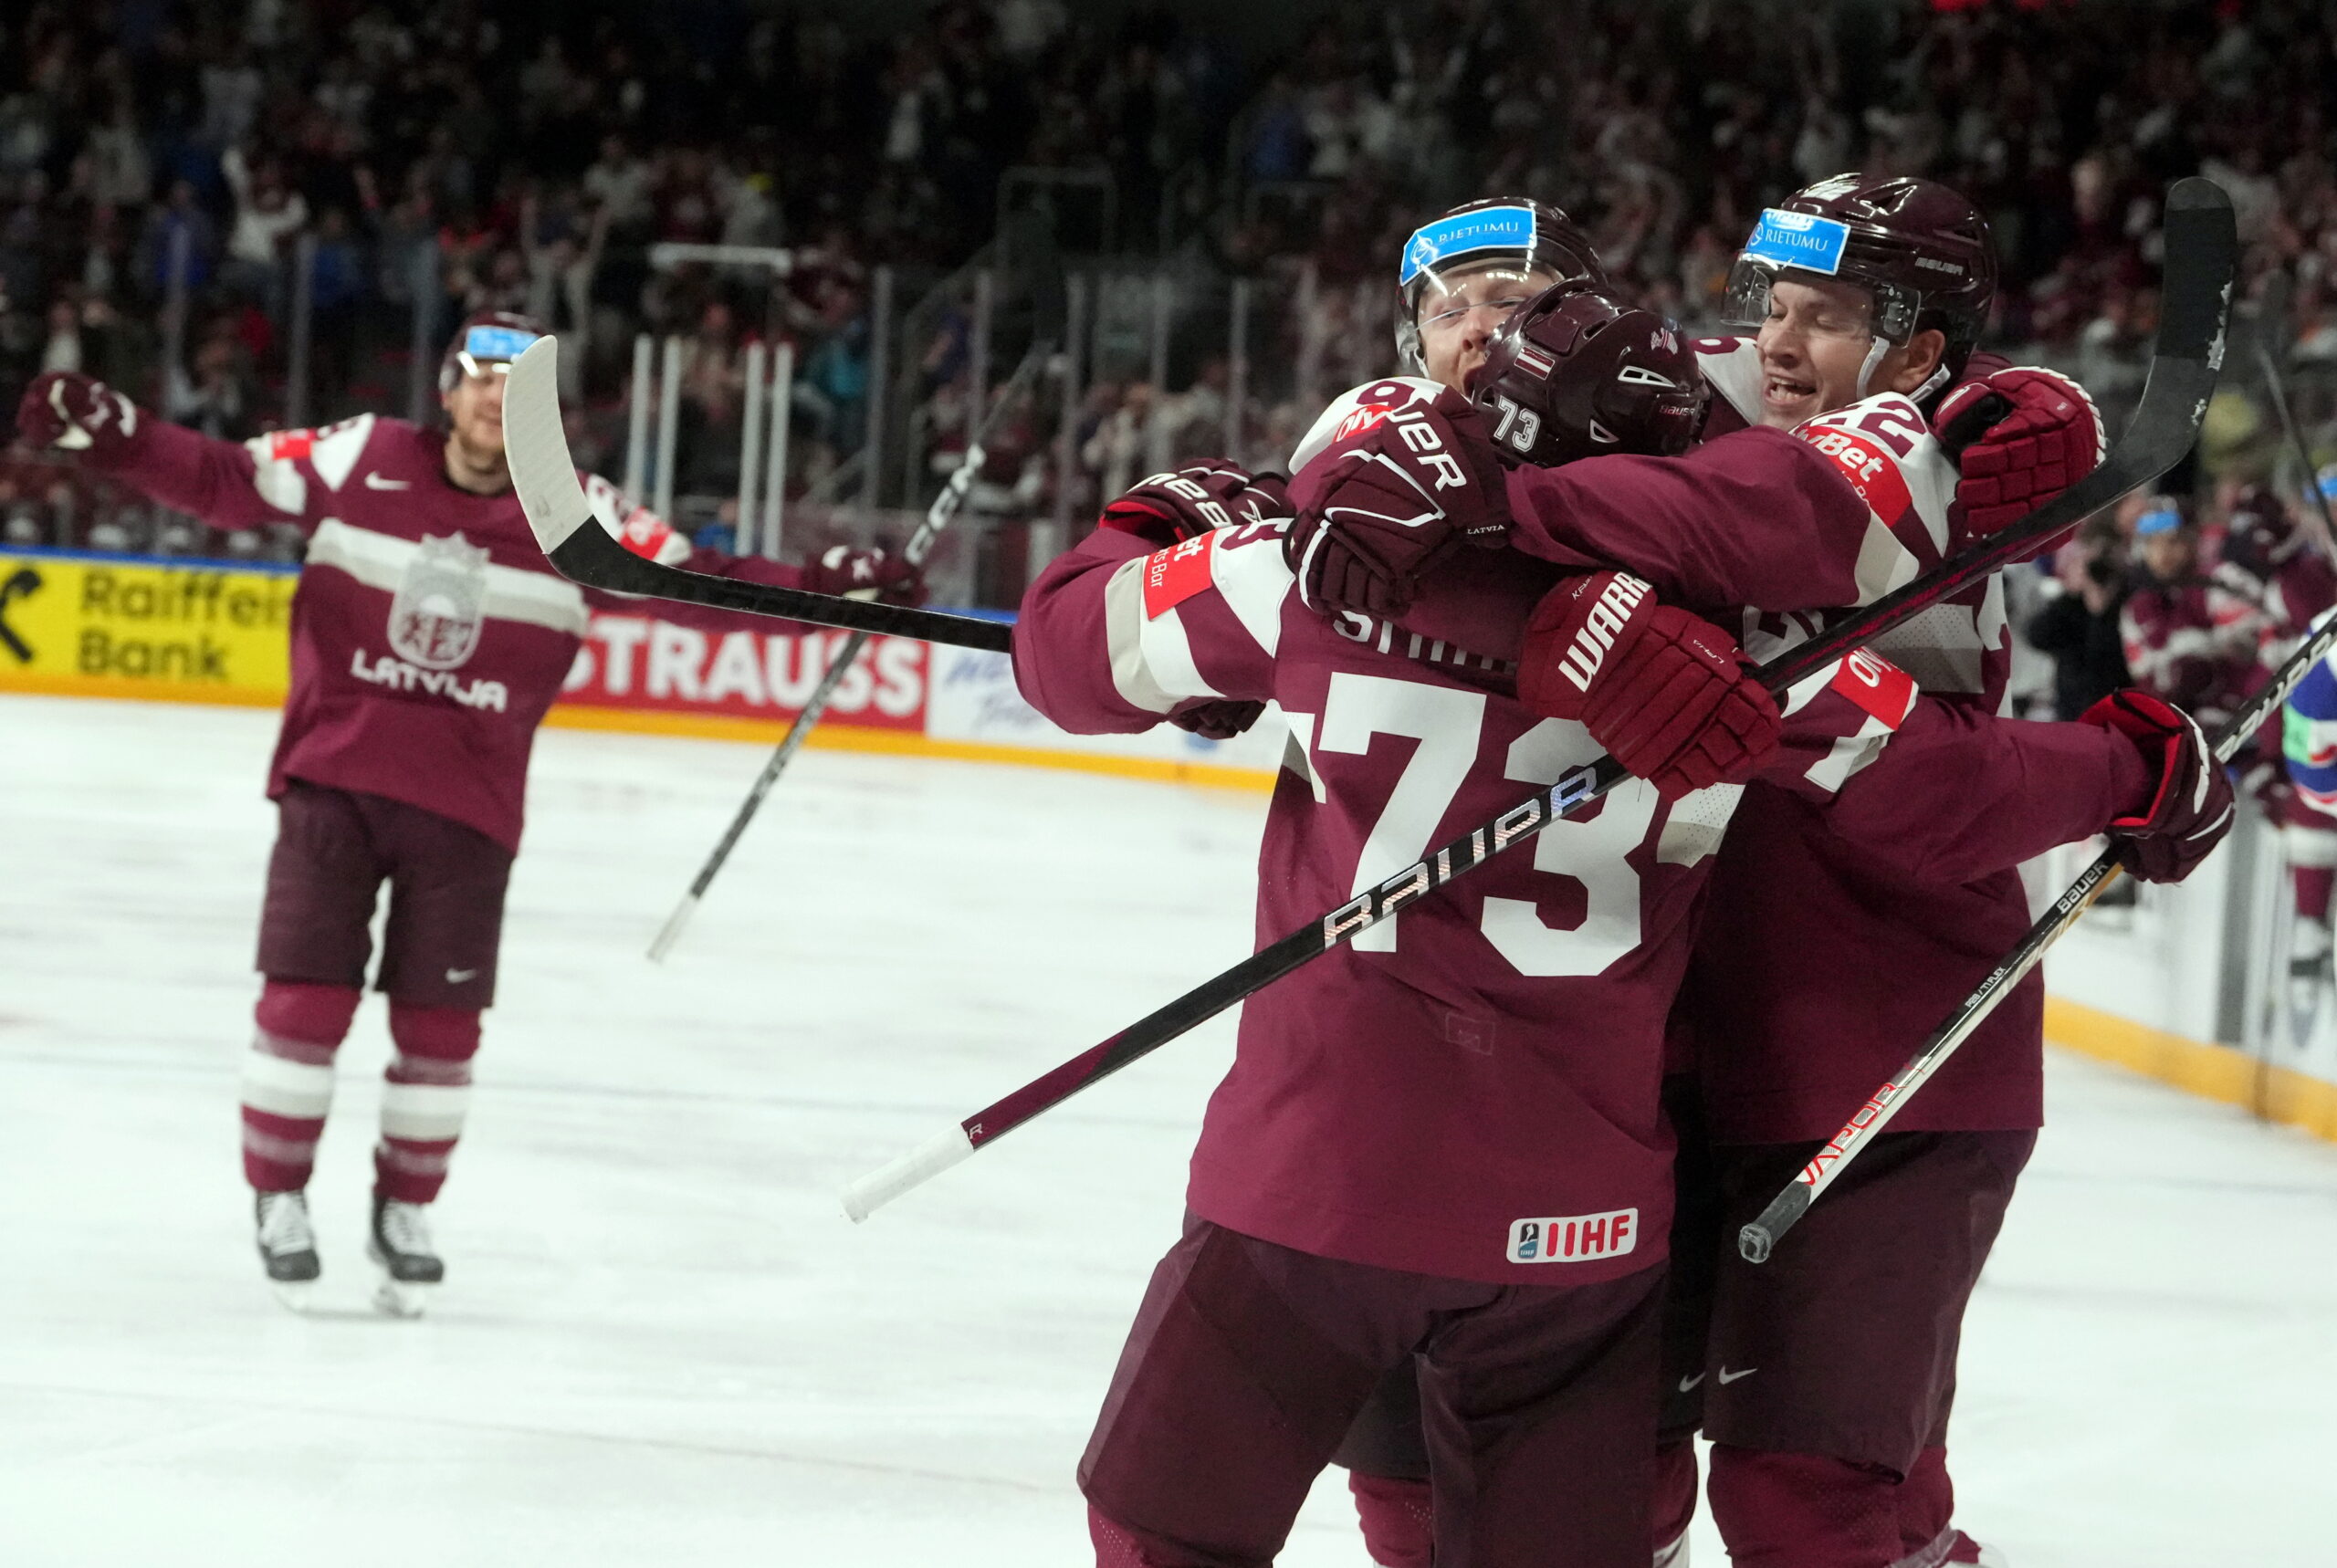 Latviske hockeyspillere vinner verdensmesterskapskampen mot Norge – BNN